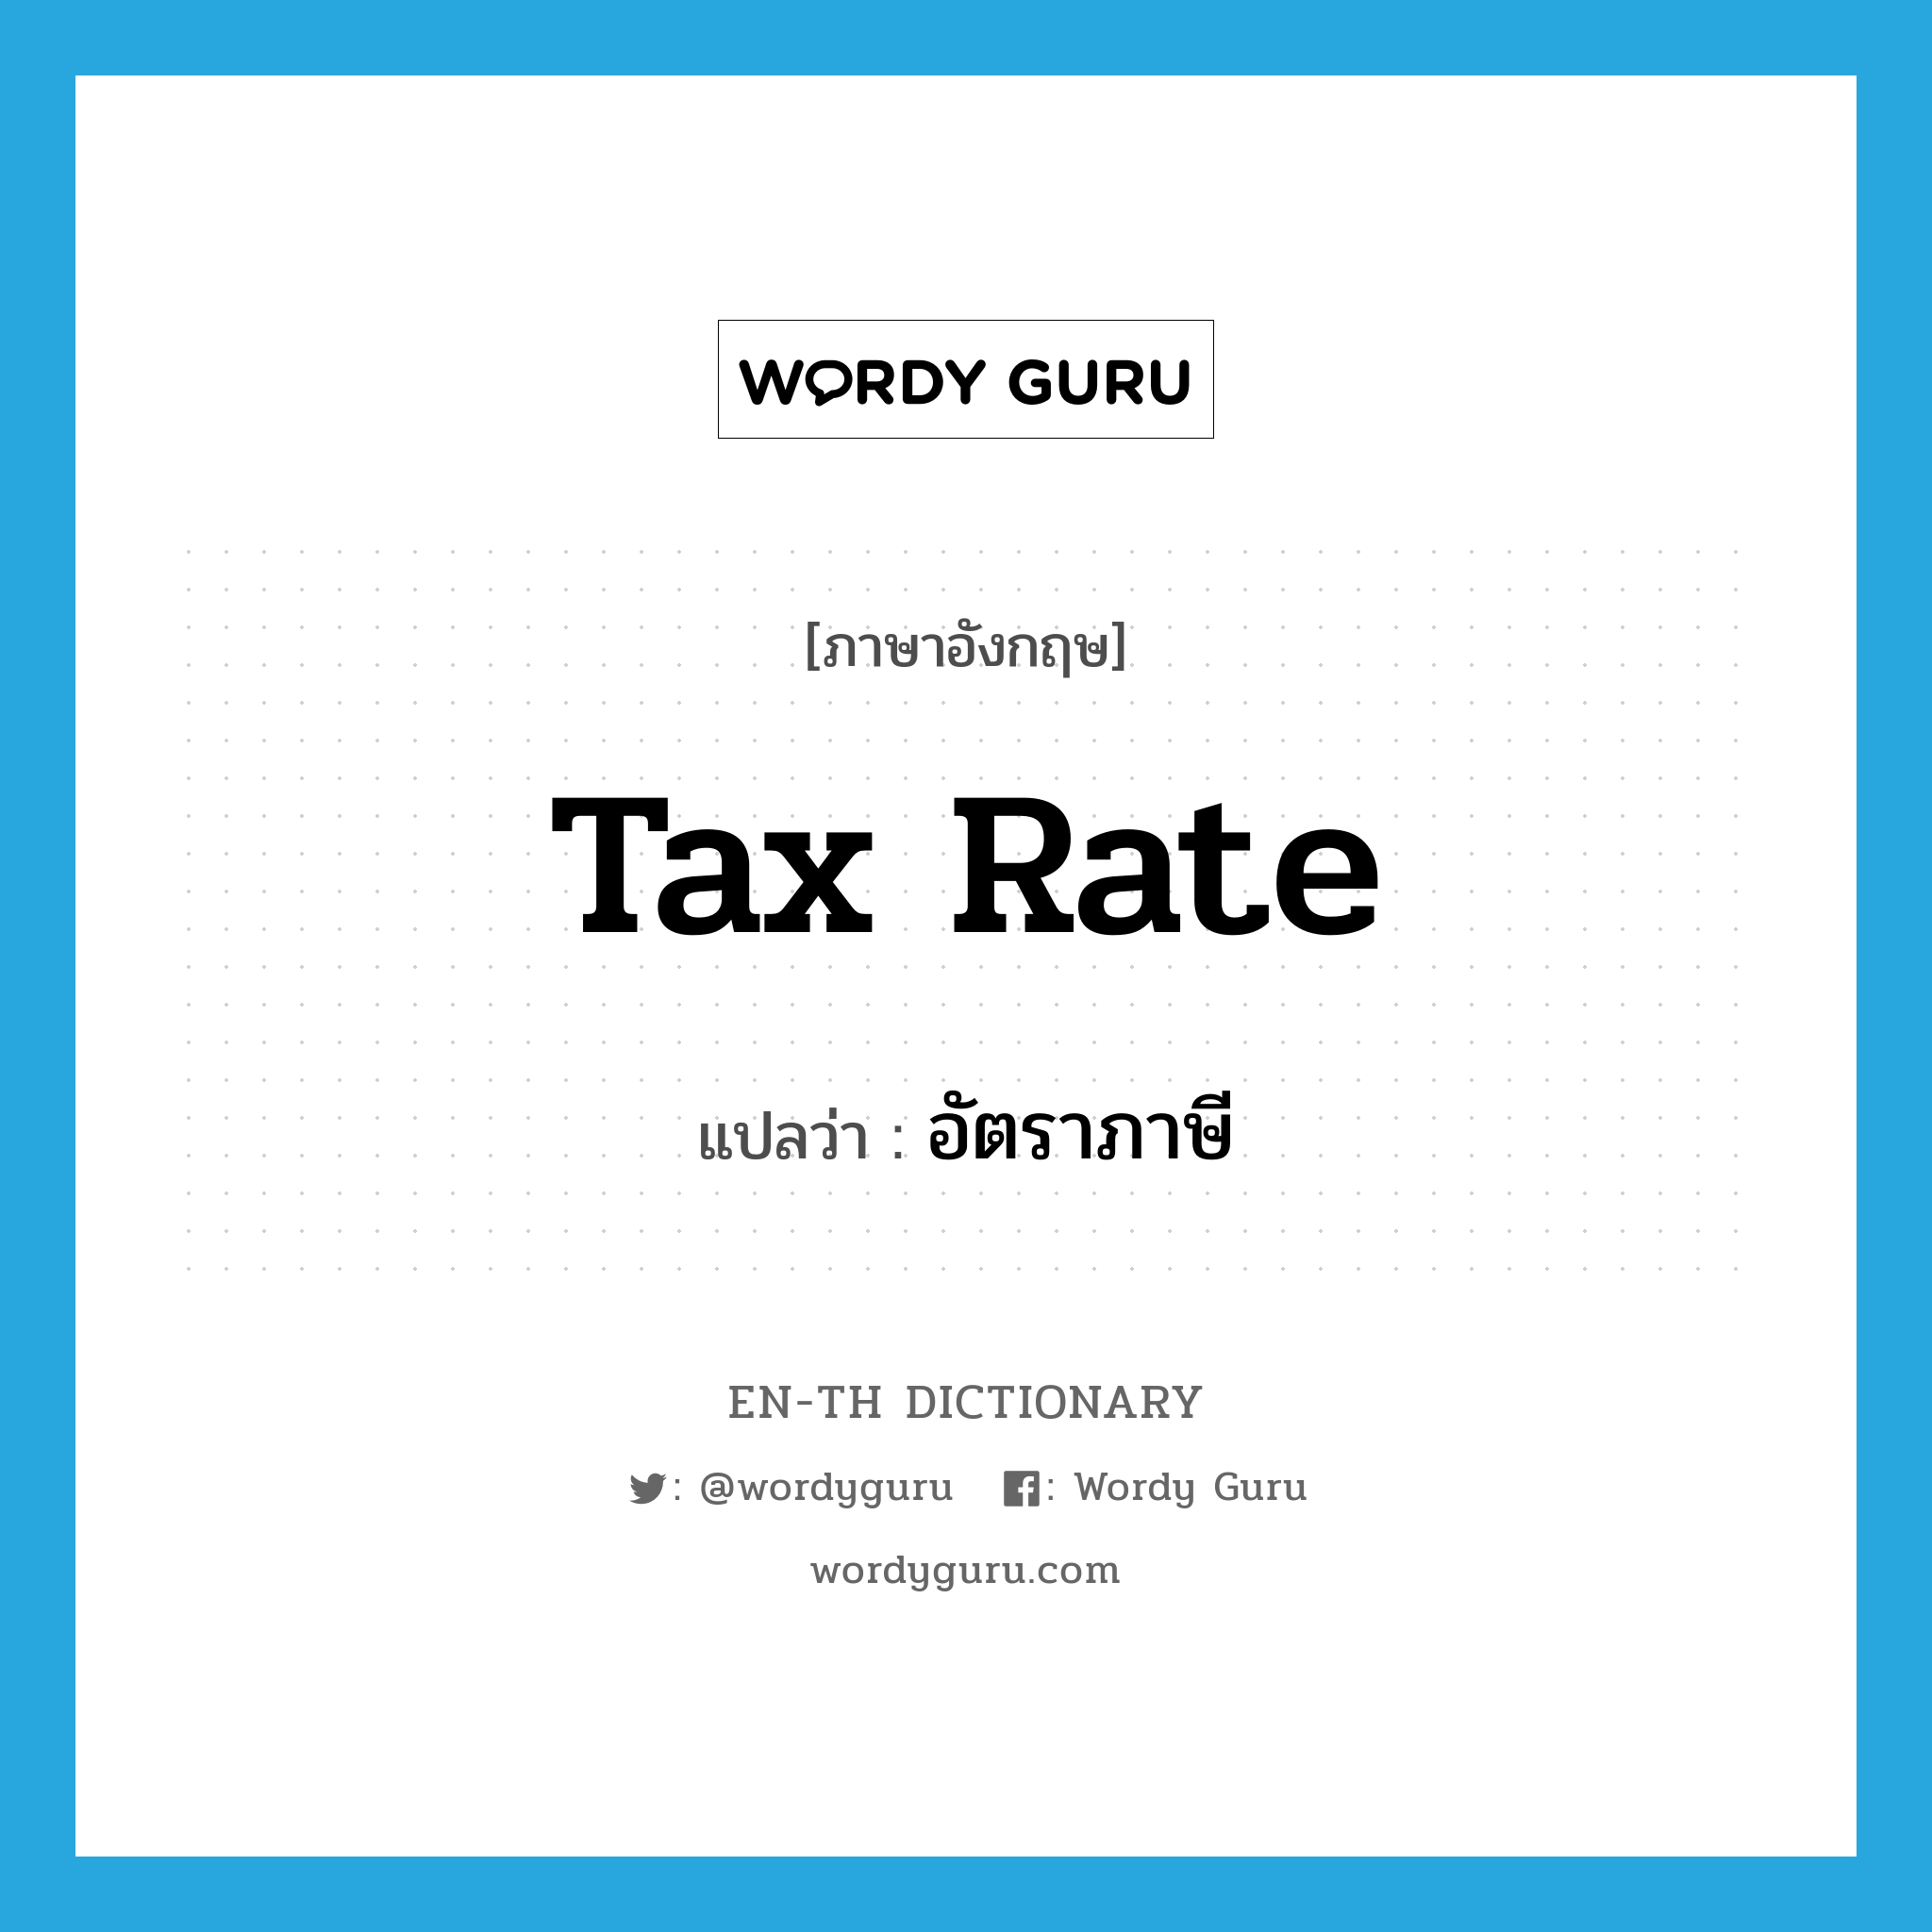 tax rate แปลว่า?, คำศัพท์ภาษาอังกฤษ tax rate แปลว่า อัตราภาษี ประเภท N หมวด N